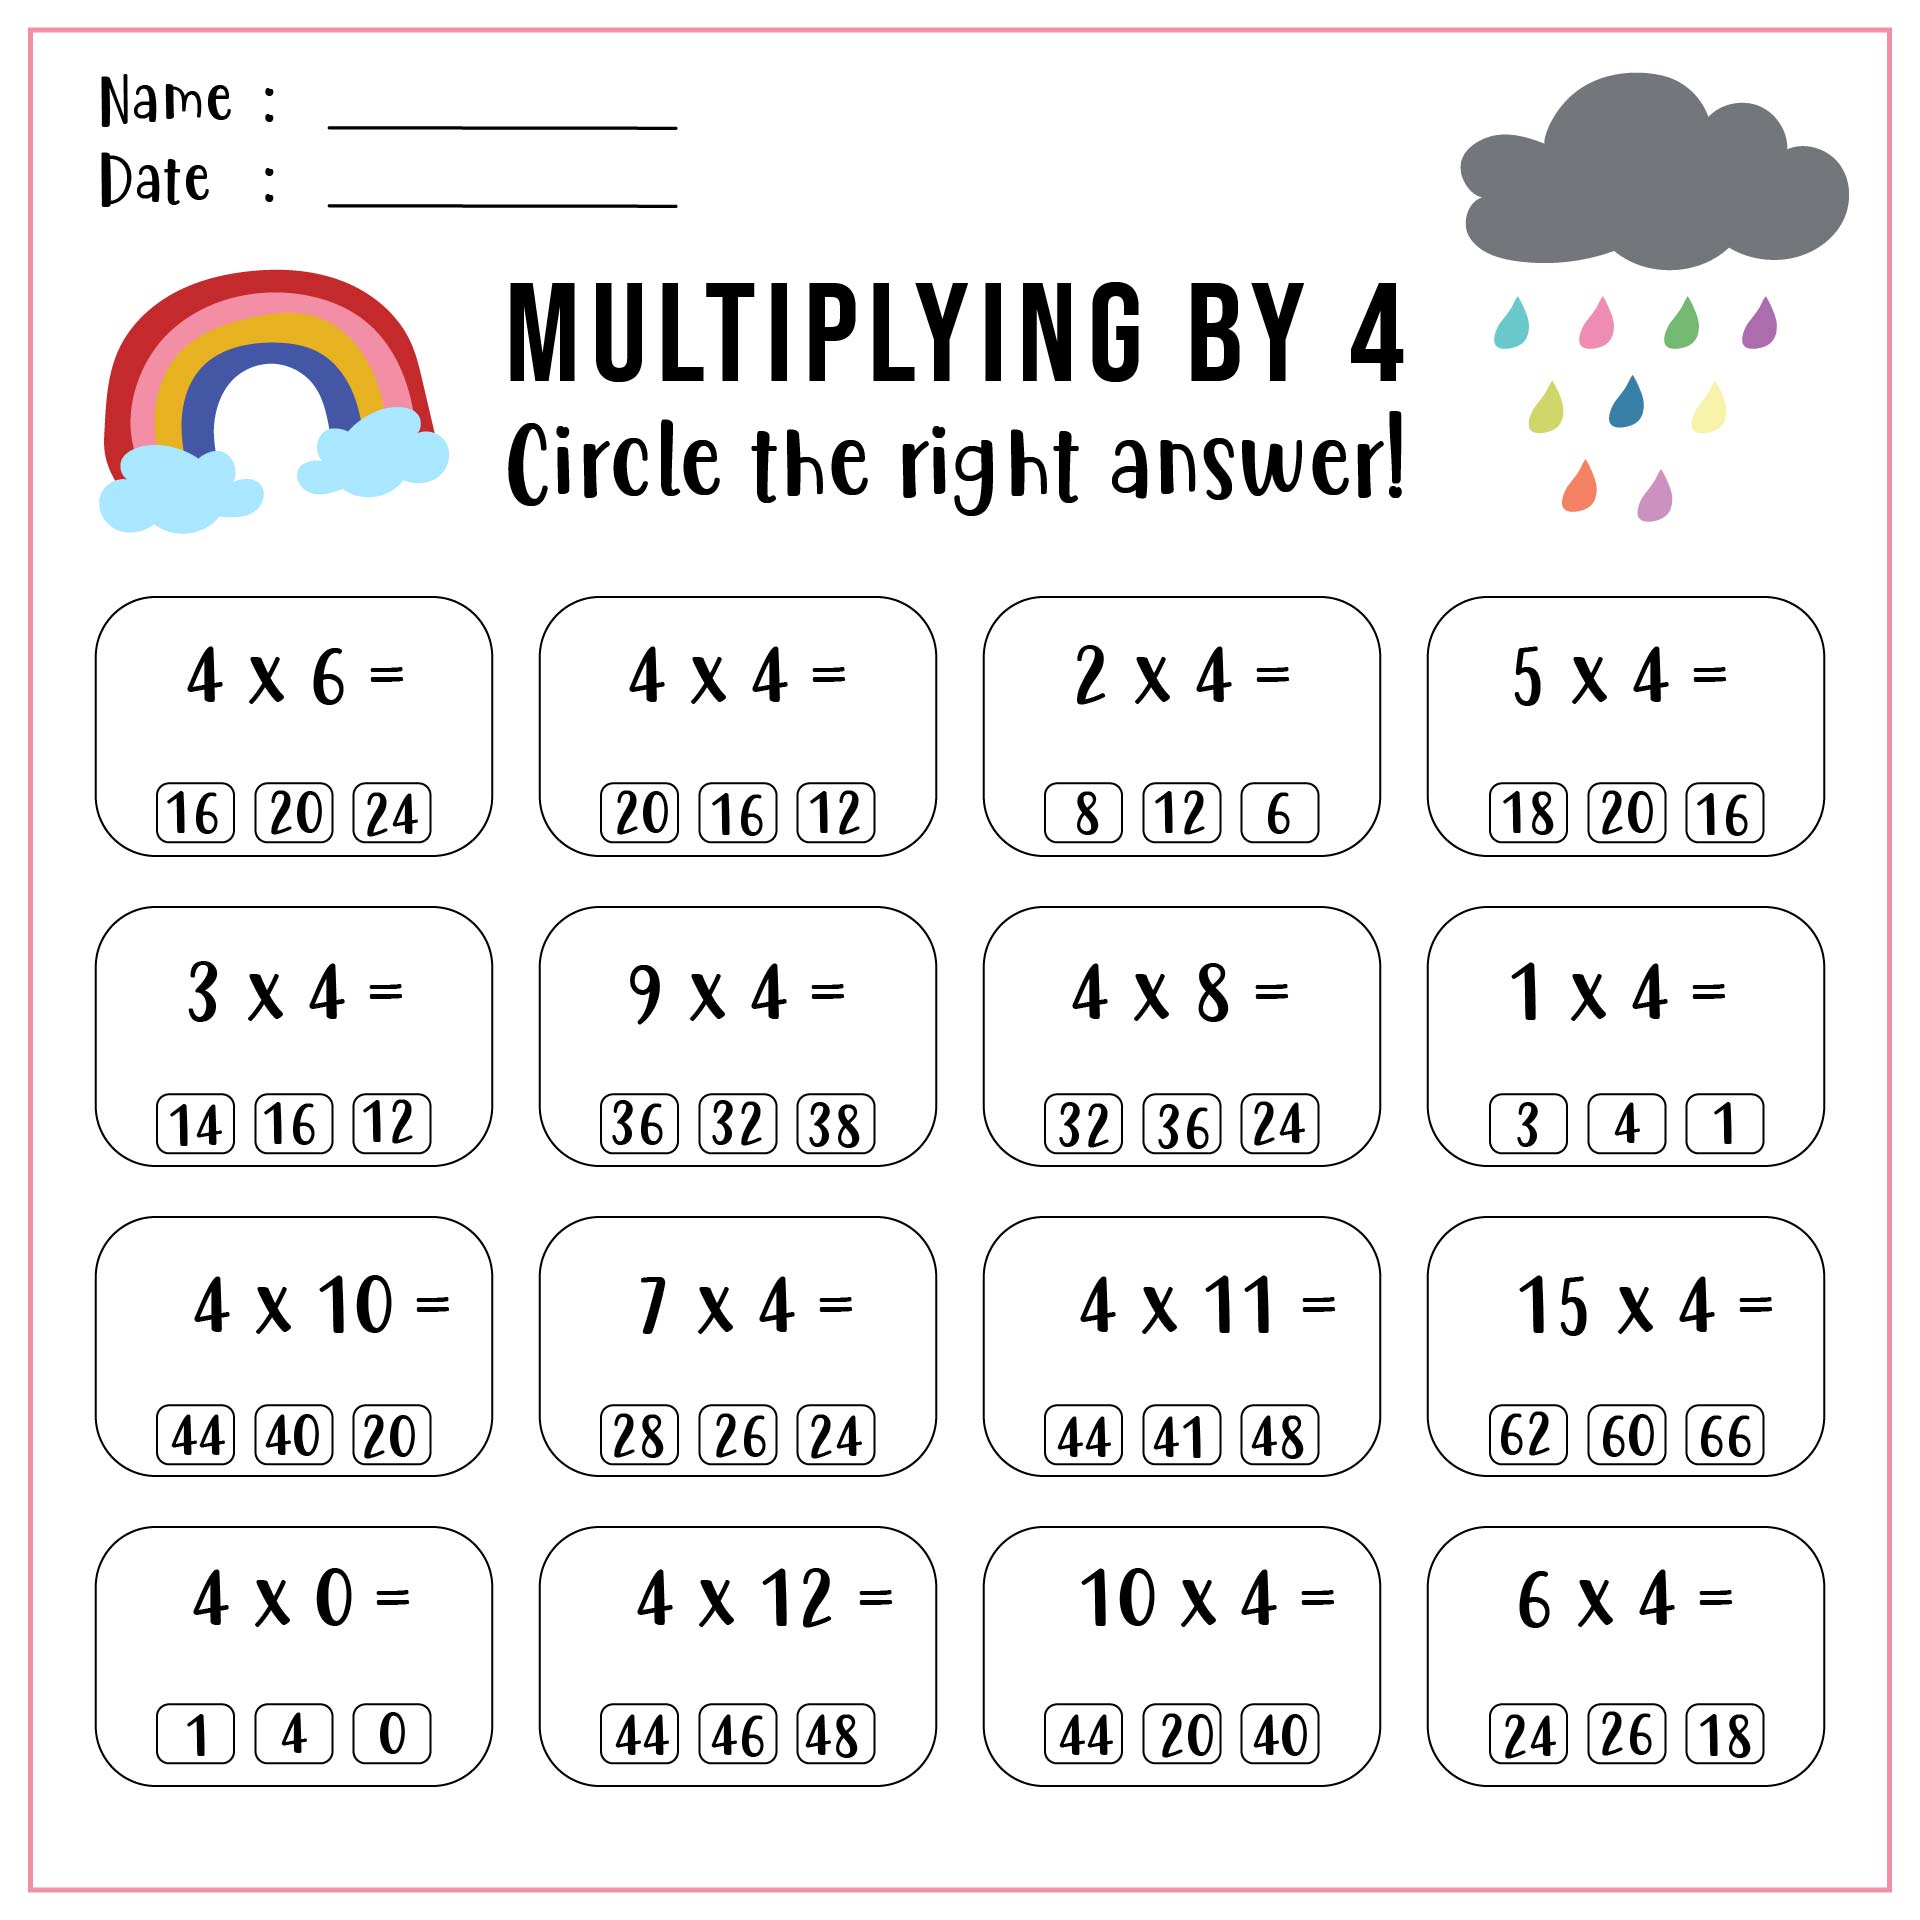 6 Best Images Of Multiplication X4 Worksheet Printable Printable Multiplication Worksheets 3